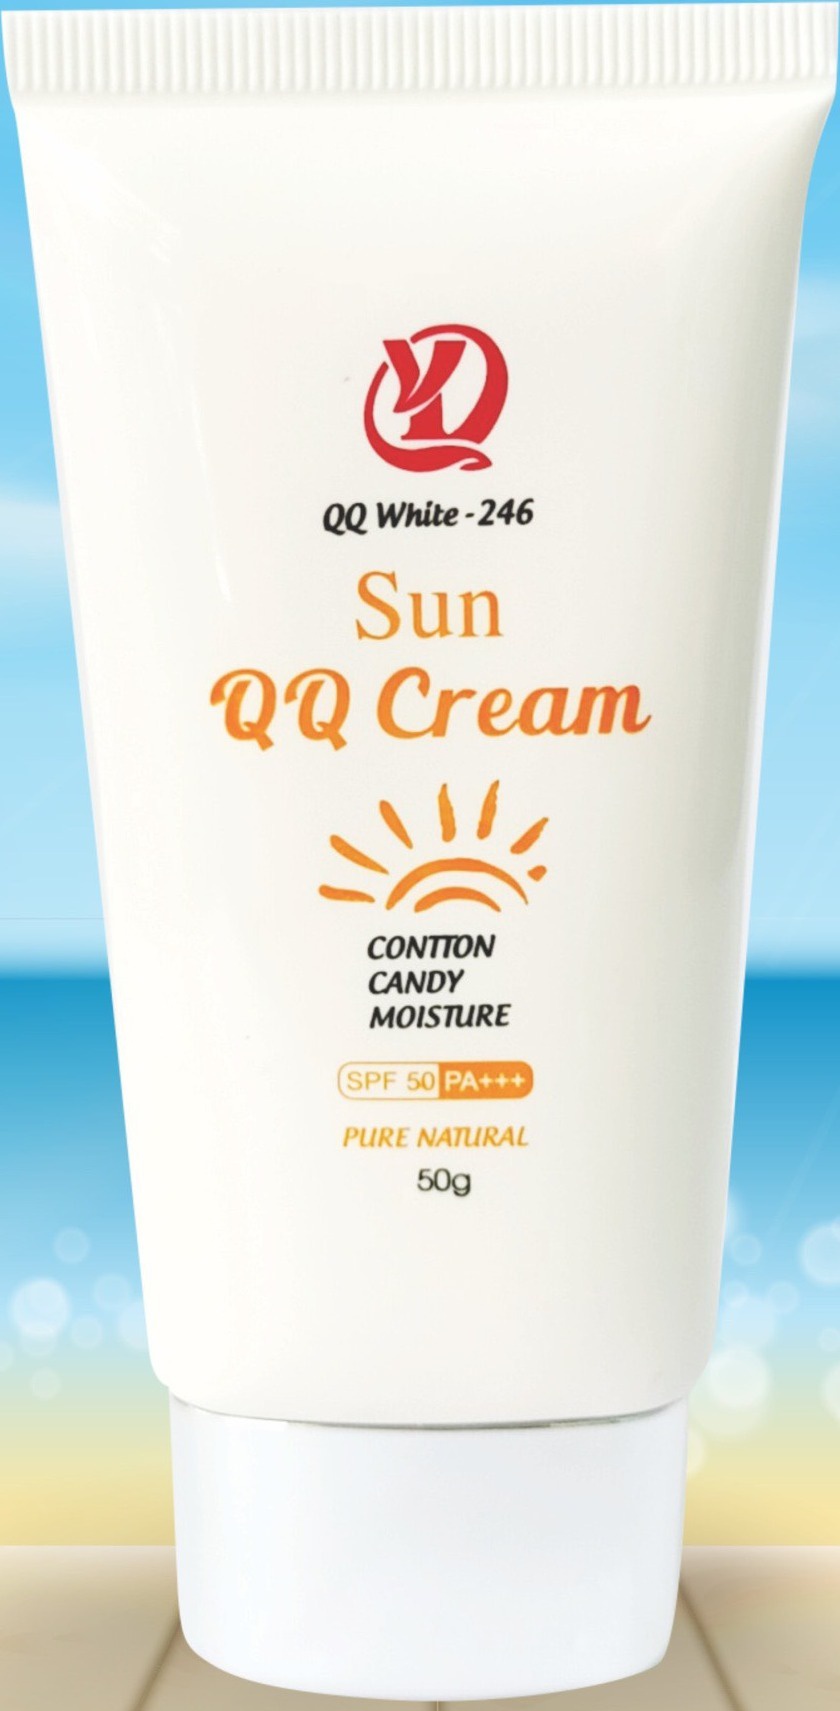 QQ White - 246 Sun QQ Cream